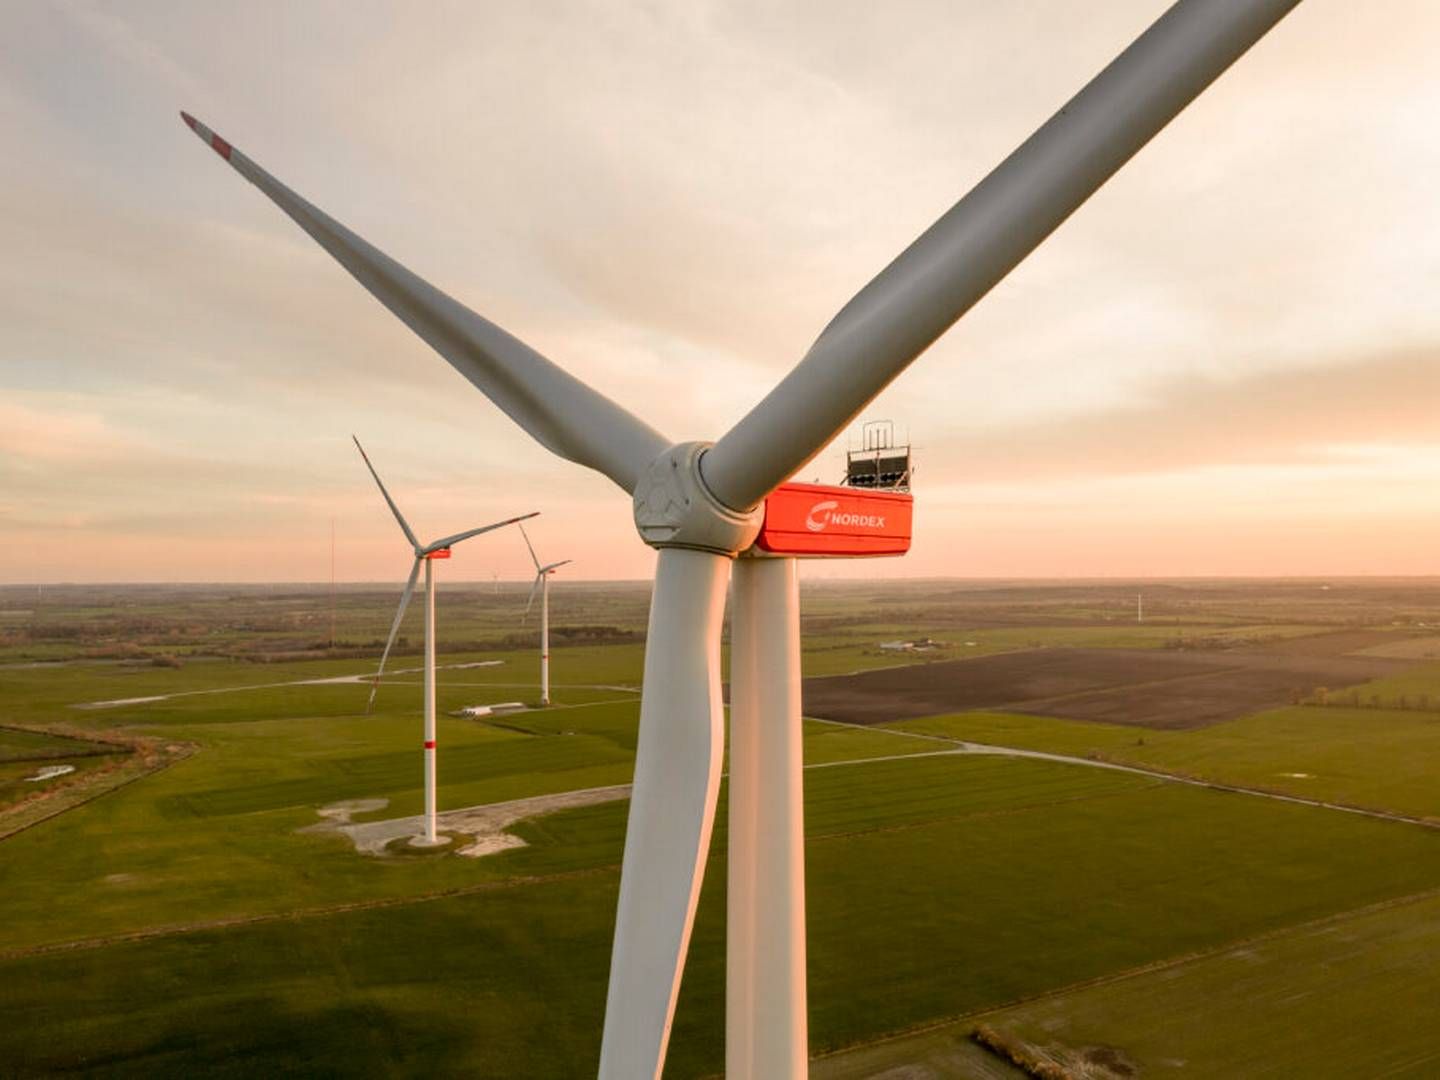 "Ordrerne kommer ikke rigtigt endnu, men jeg vil stadig gerne have, at producenterne af vindmøller fastholder kapaciteten nu og om nødvendigt udvider den,” siger den tyske økonomi- og klimaminister. | Foto: Nordex